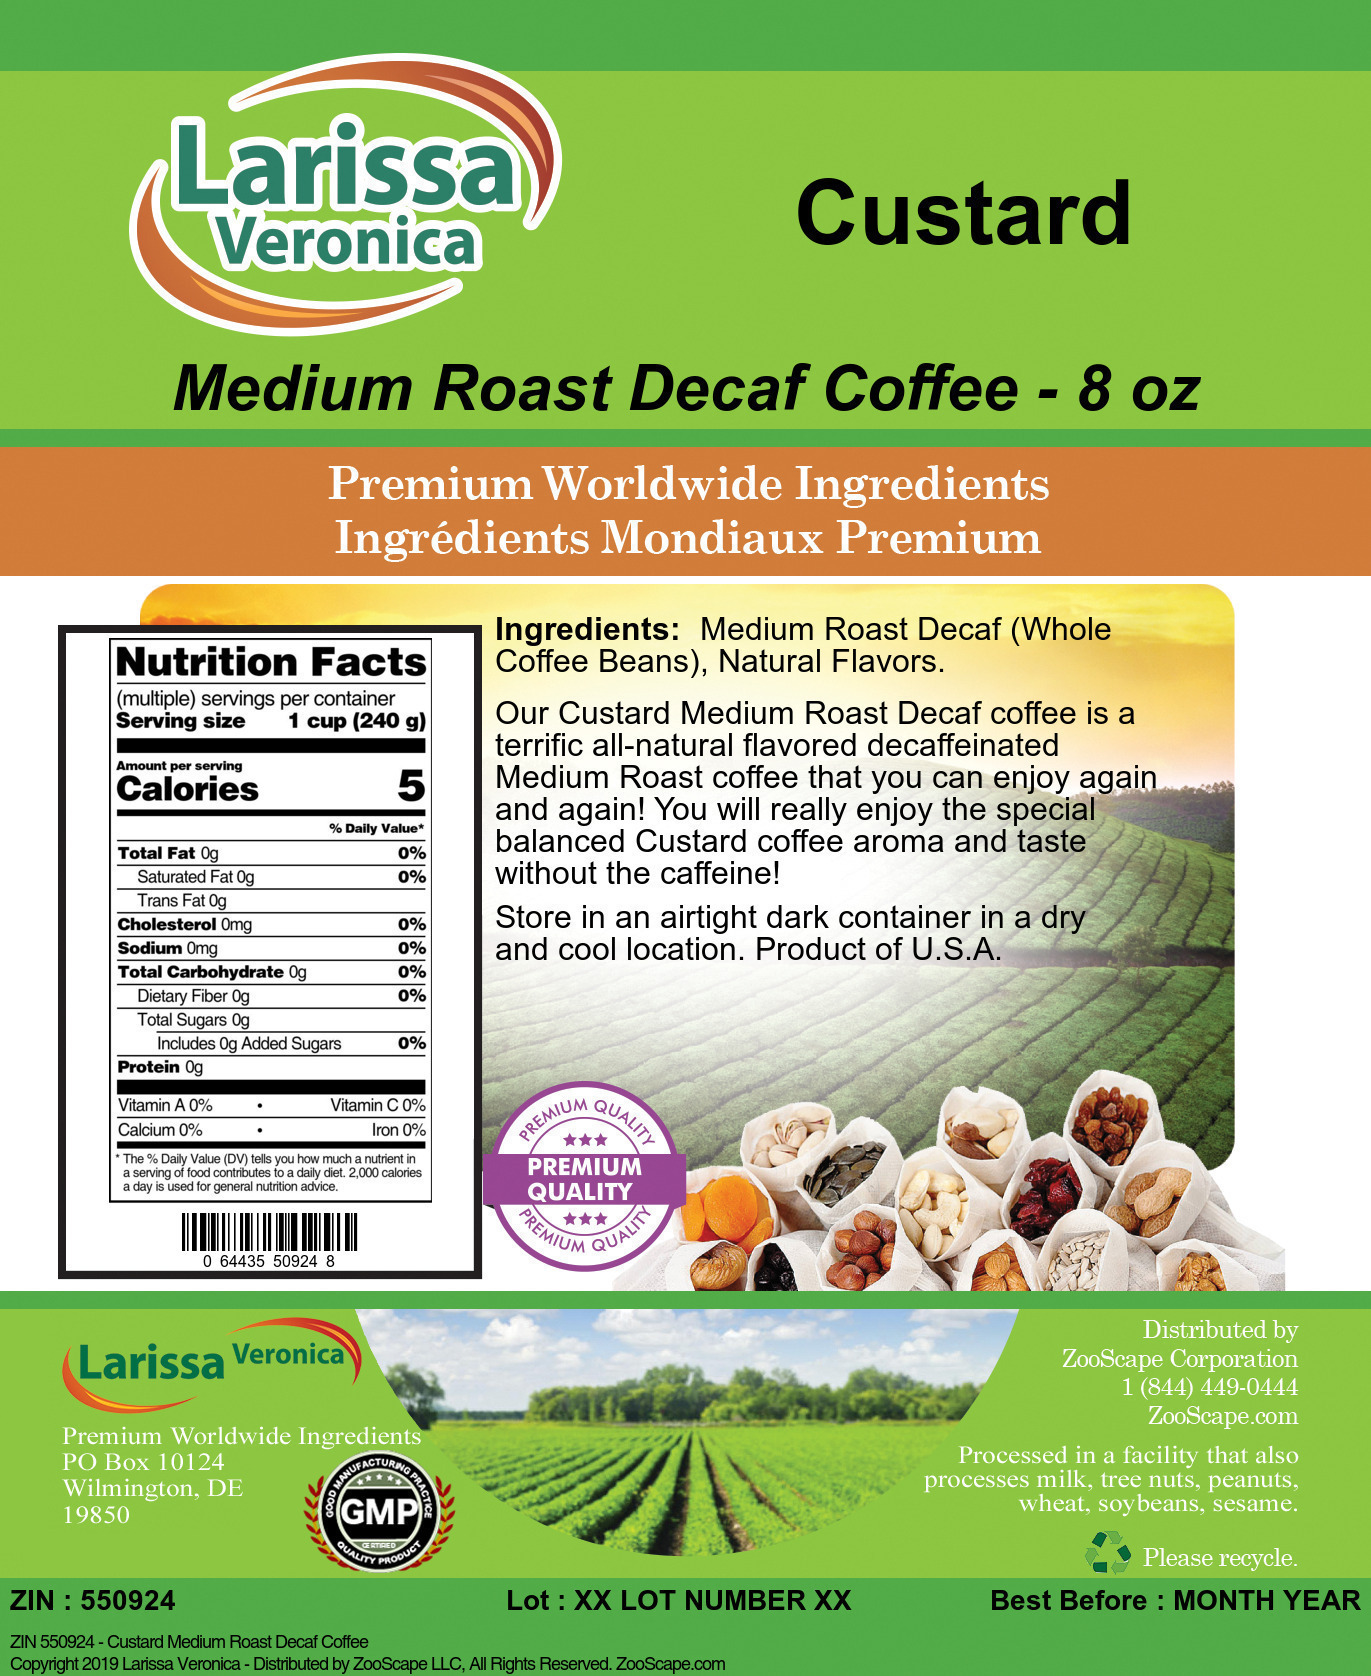 Custard Medium Roast Decaf Coffee - Label